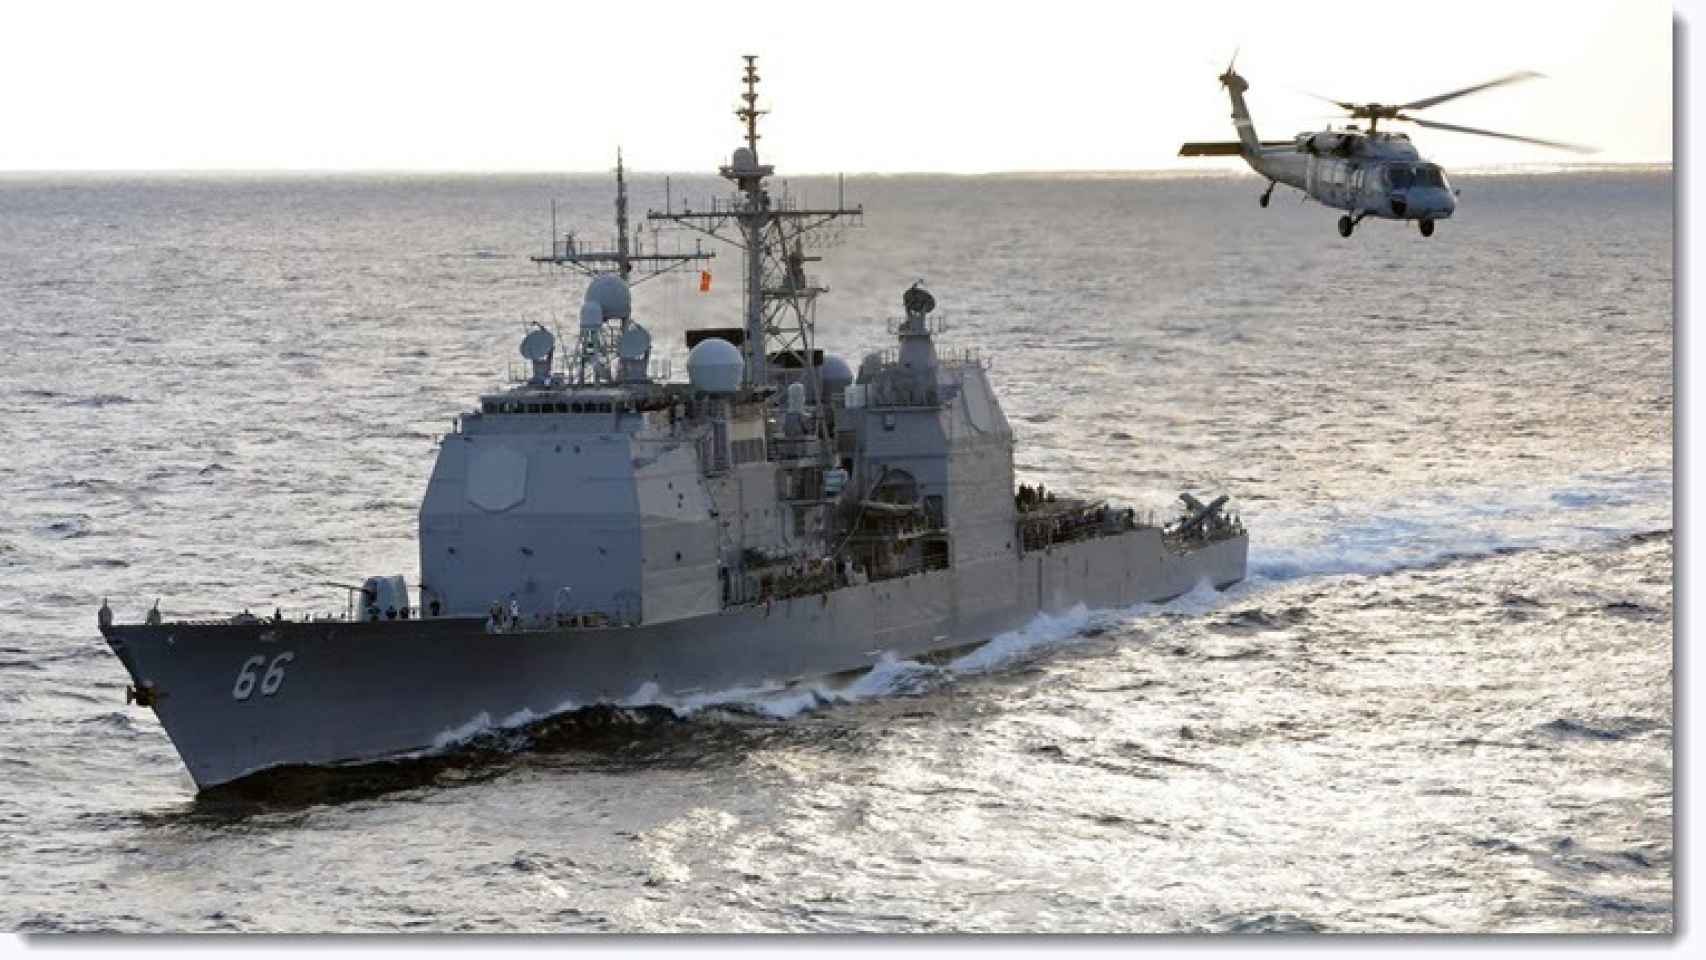 Imagen del USS Hué City, barco donde sucedieron los hechos.